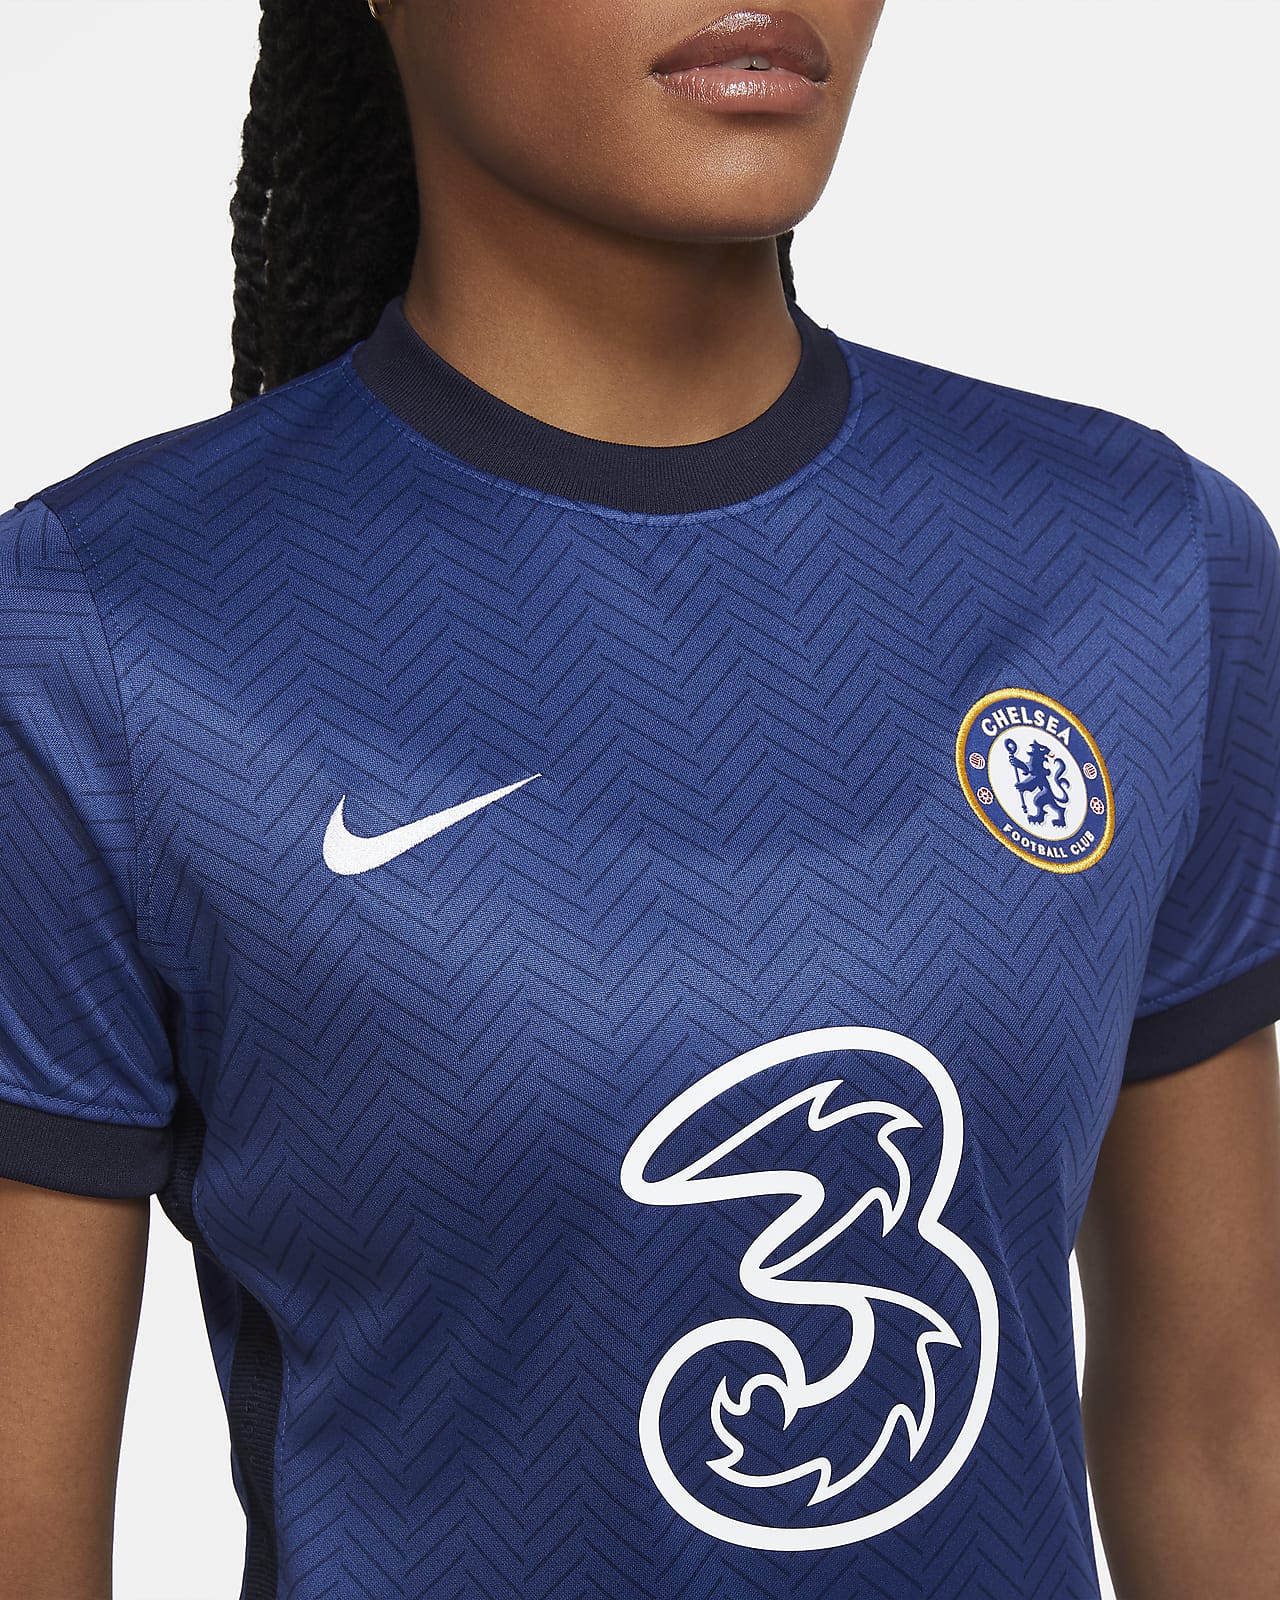 Chelsea F C 2020 21 Stadium Home Women S Football Shirt Nike Lu